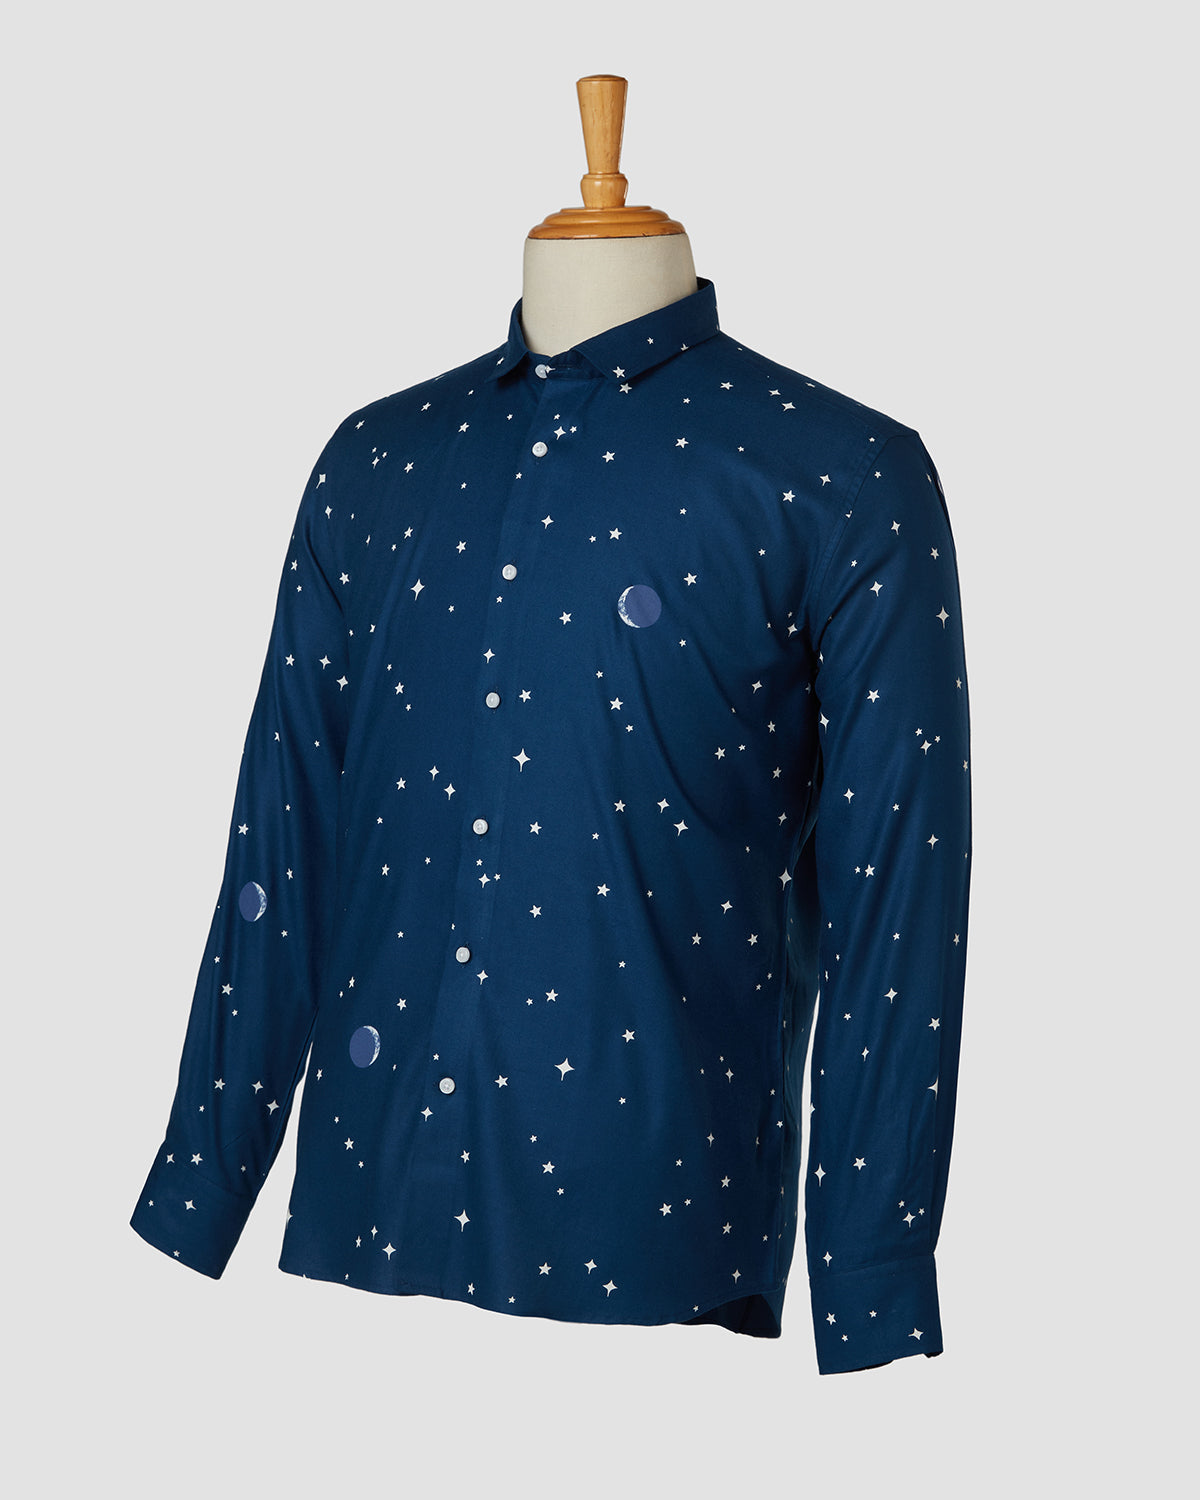 Bombay Shirt Company - Astroman Shirt